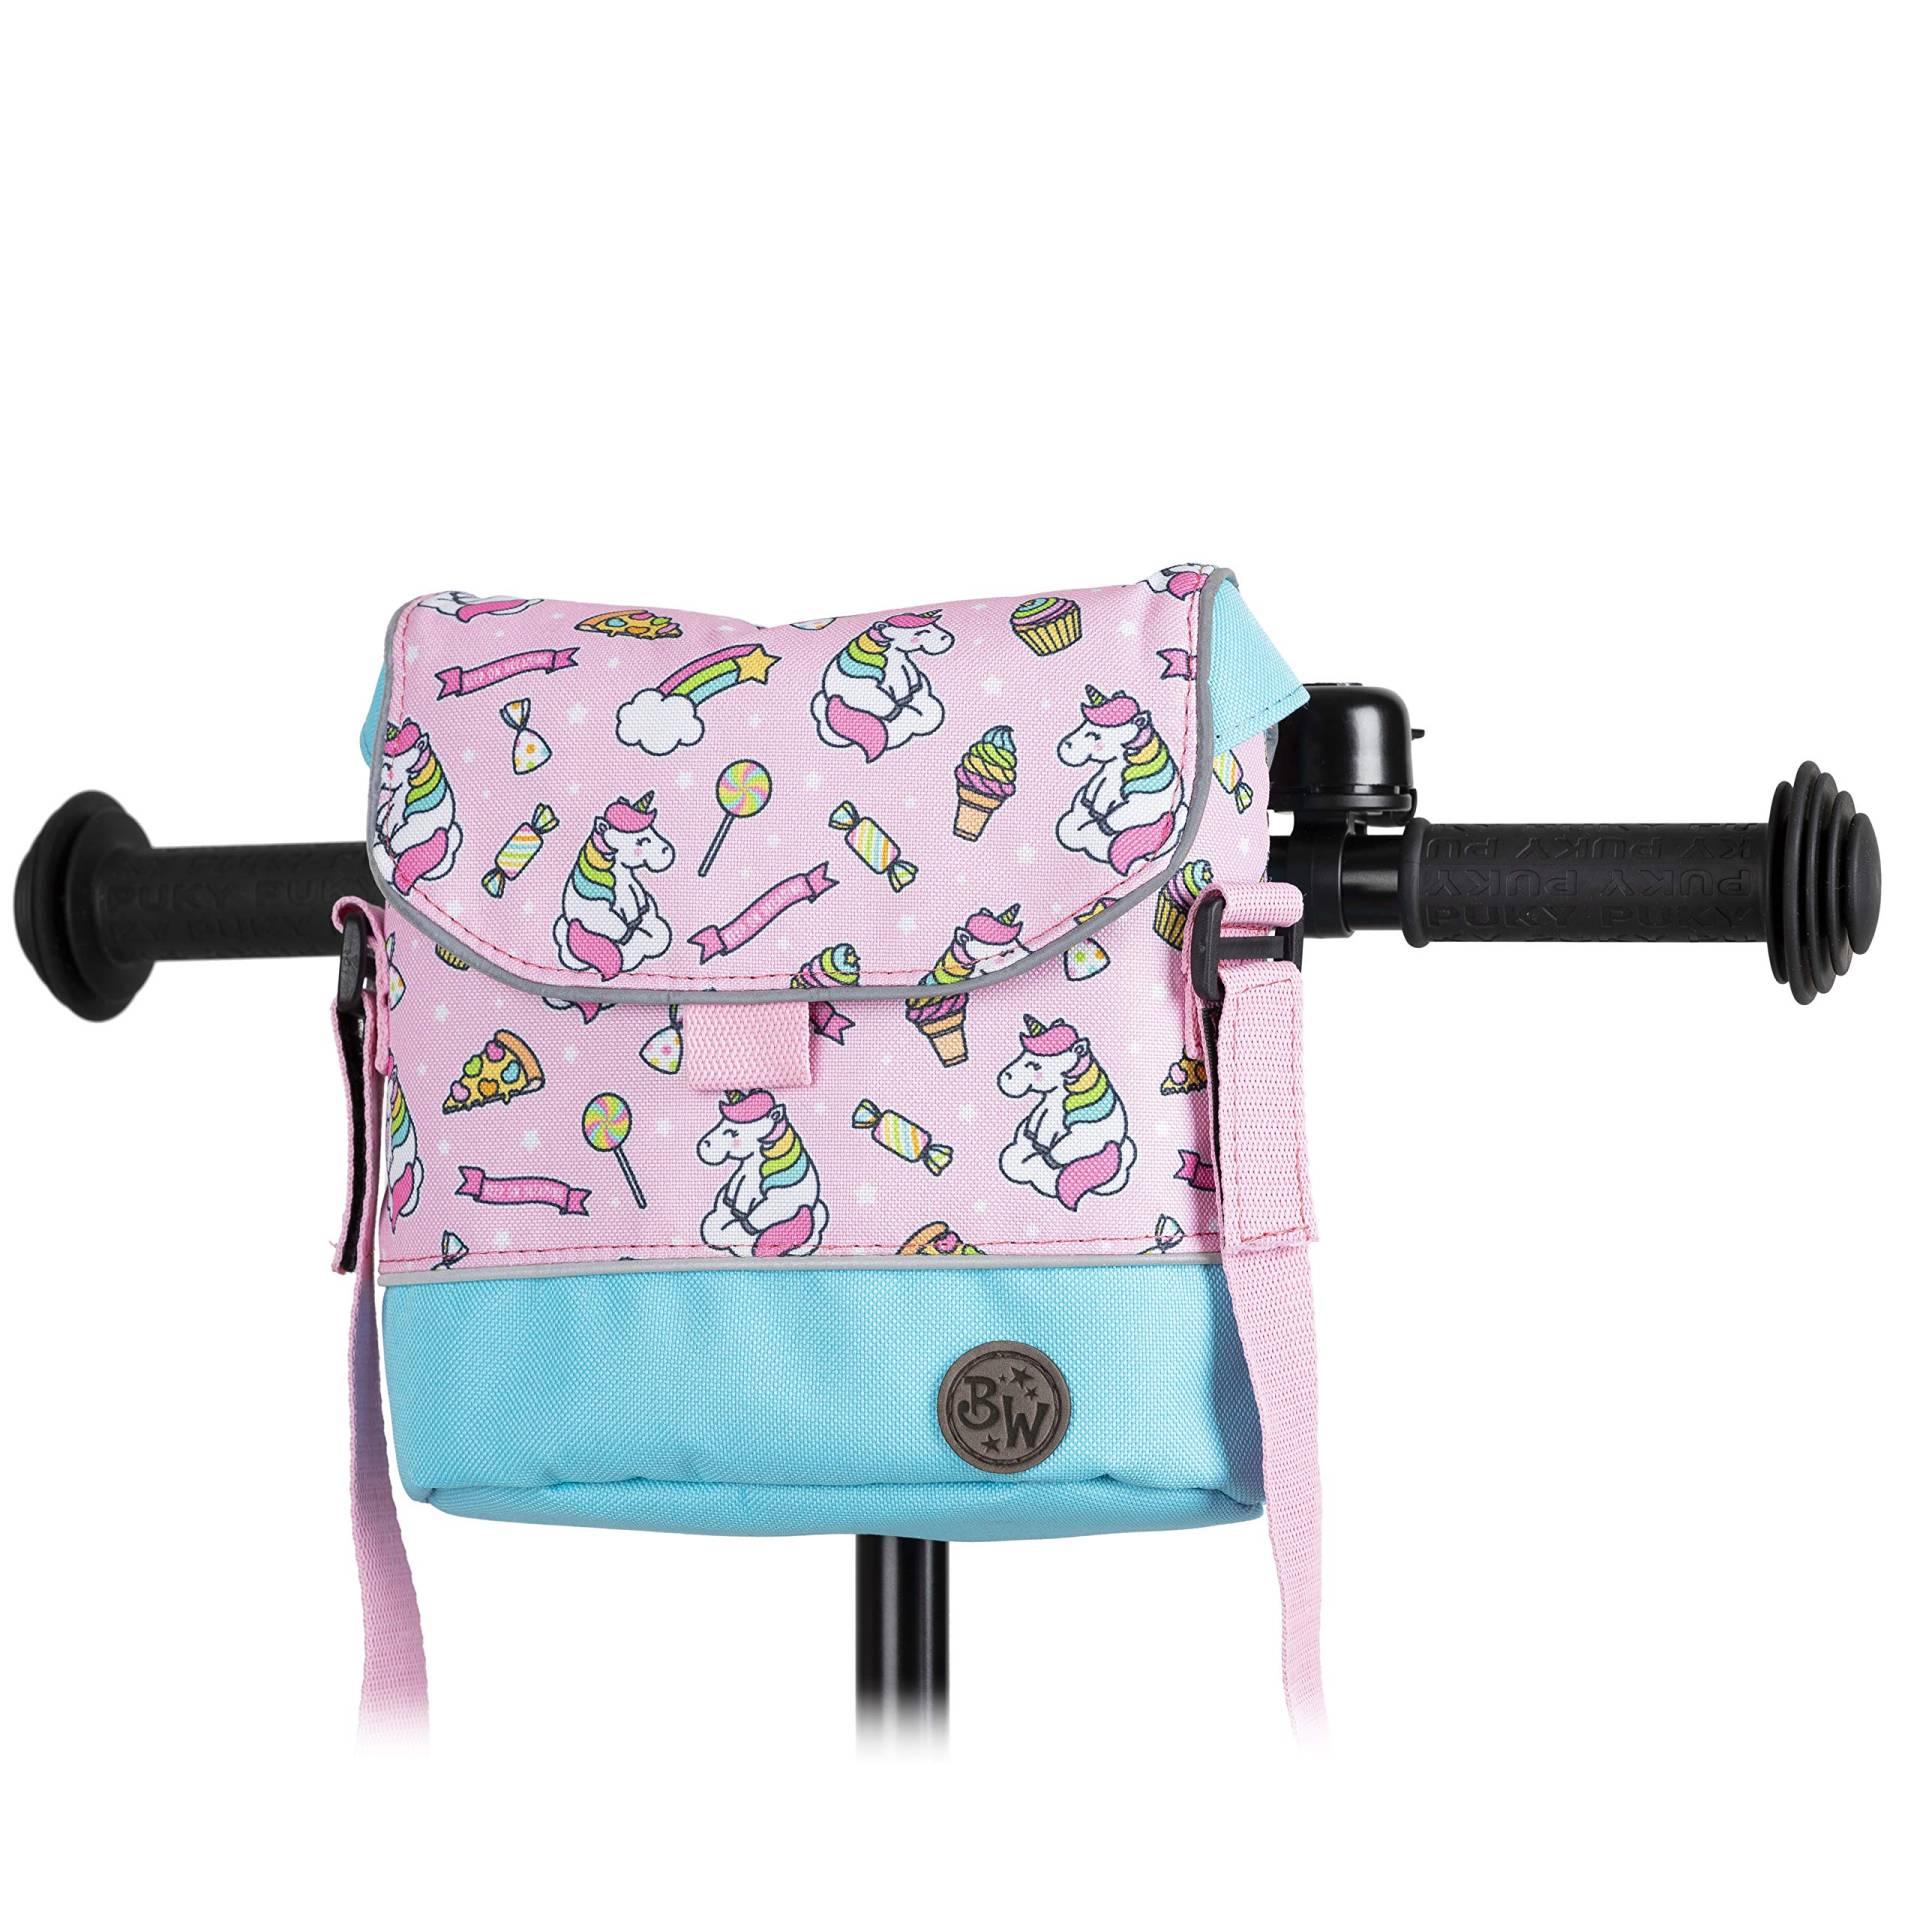 BAMBINIWELT Lenkertasche Tasche kompatibel mit Puky mit Woom Laufrad Räder Roller Fahrrad Fahrradtasche für Kinder wasserabweisend mit Schultergurt (Modell 20) von BambiniWelt by Rafael K.